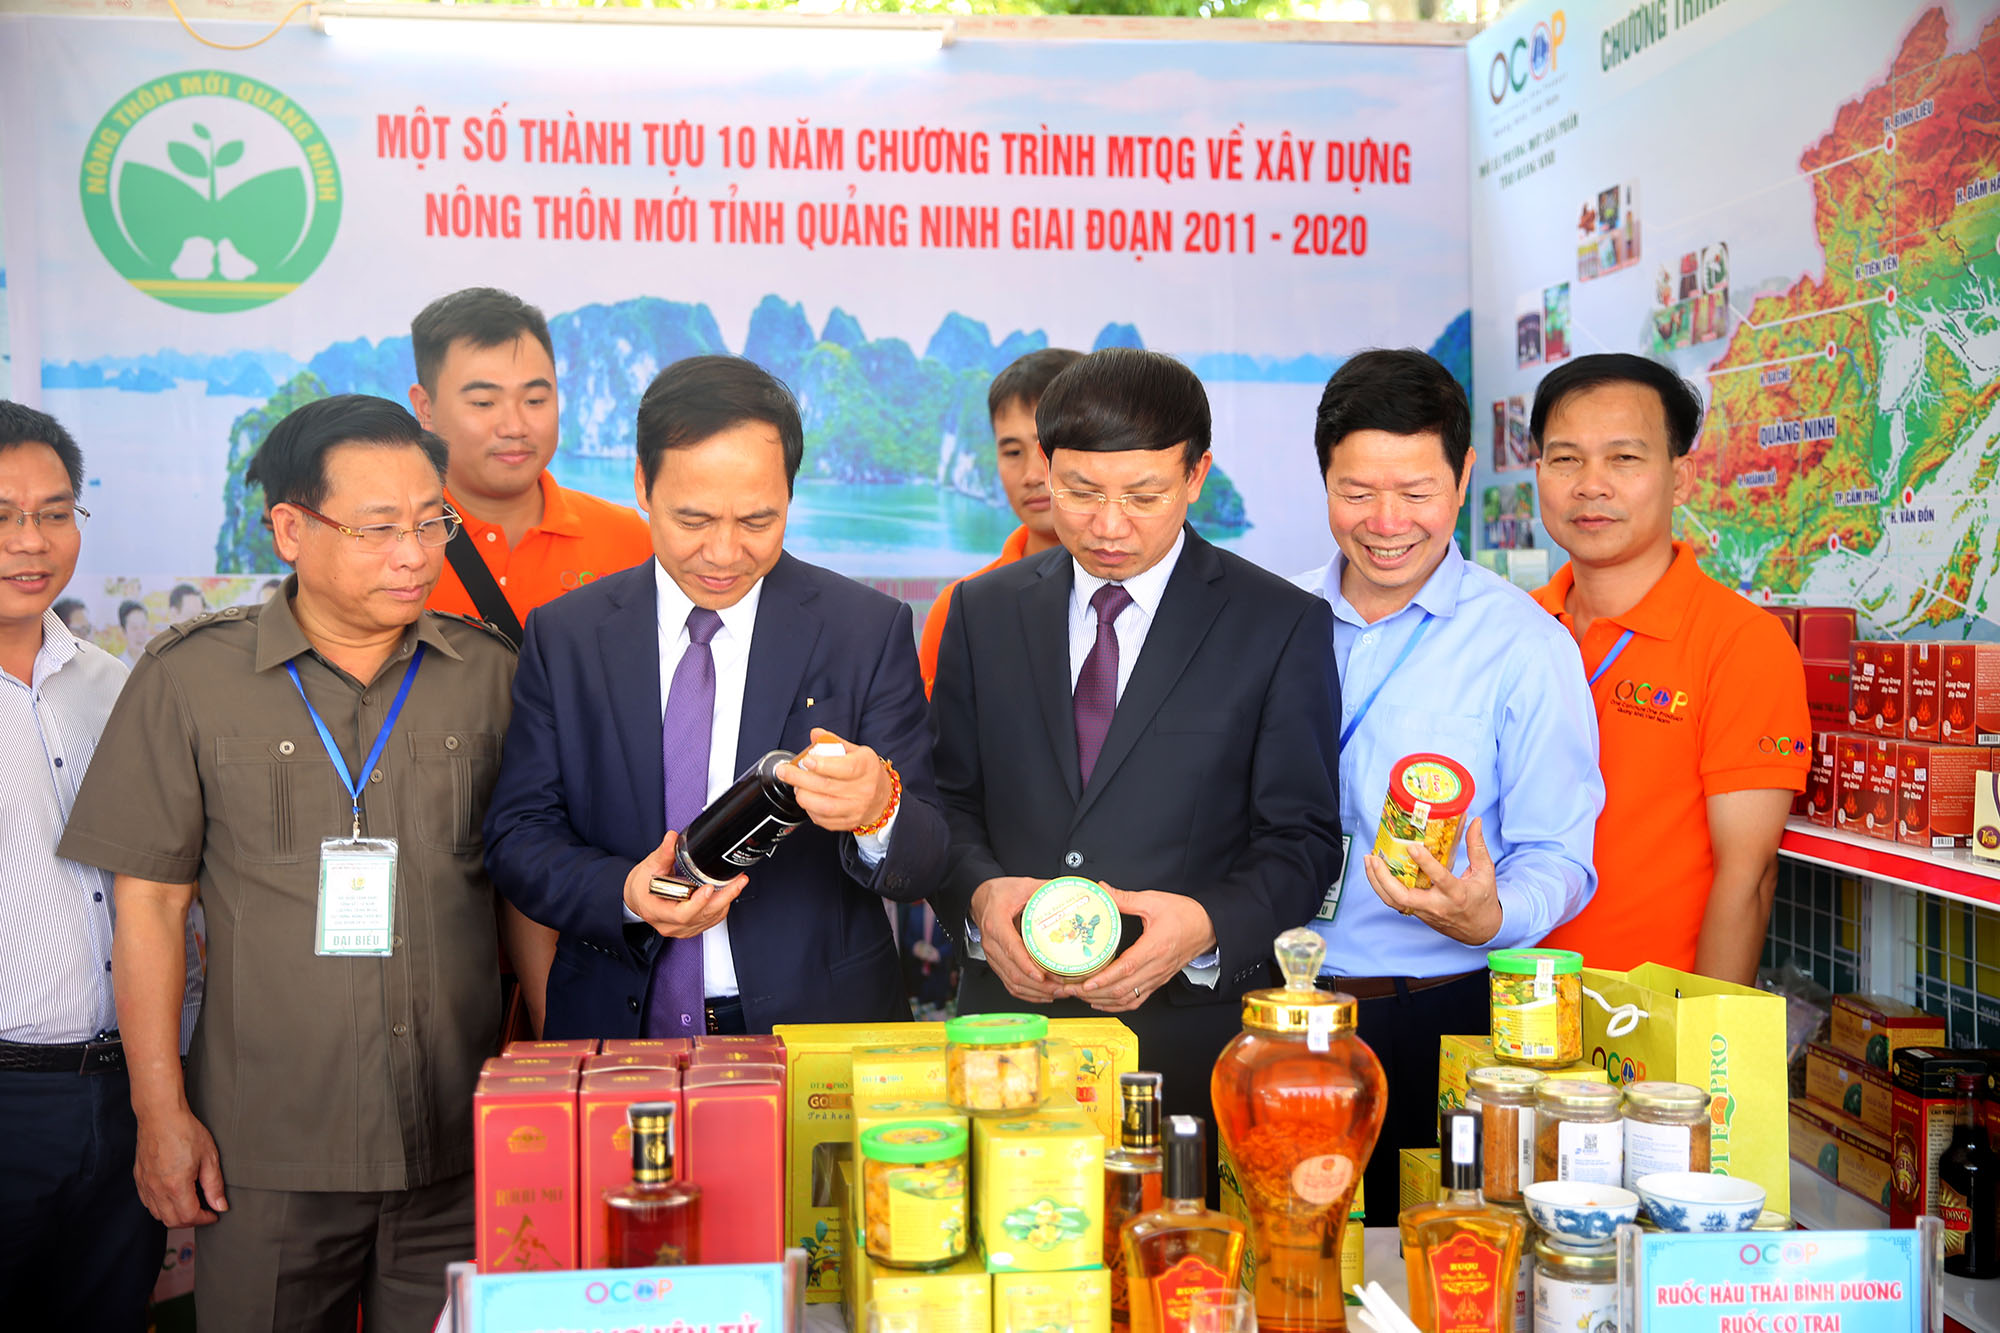 Bí thư Tỉnh ủy, Chủ tịch HĐND tỉnh Nguyễn Xuân Ký cùng các đại biểu tham quan gian trung bày các sản phẩm OCOP của tỉnh Quảng Ninh trong 